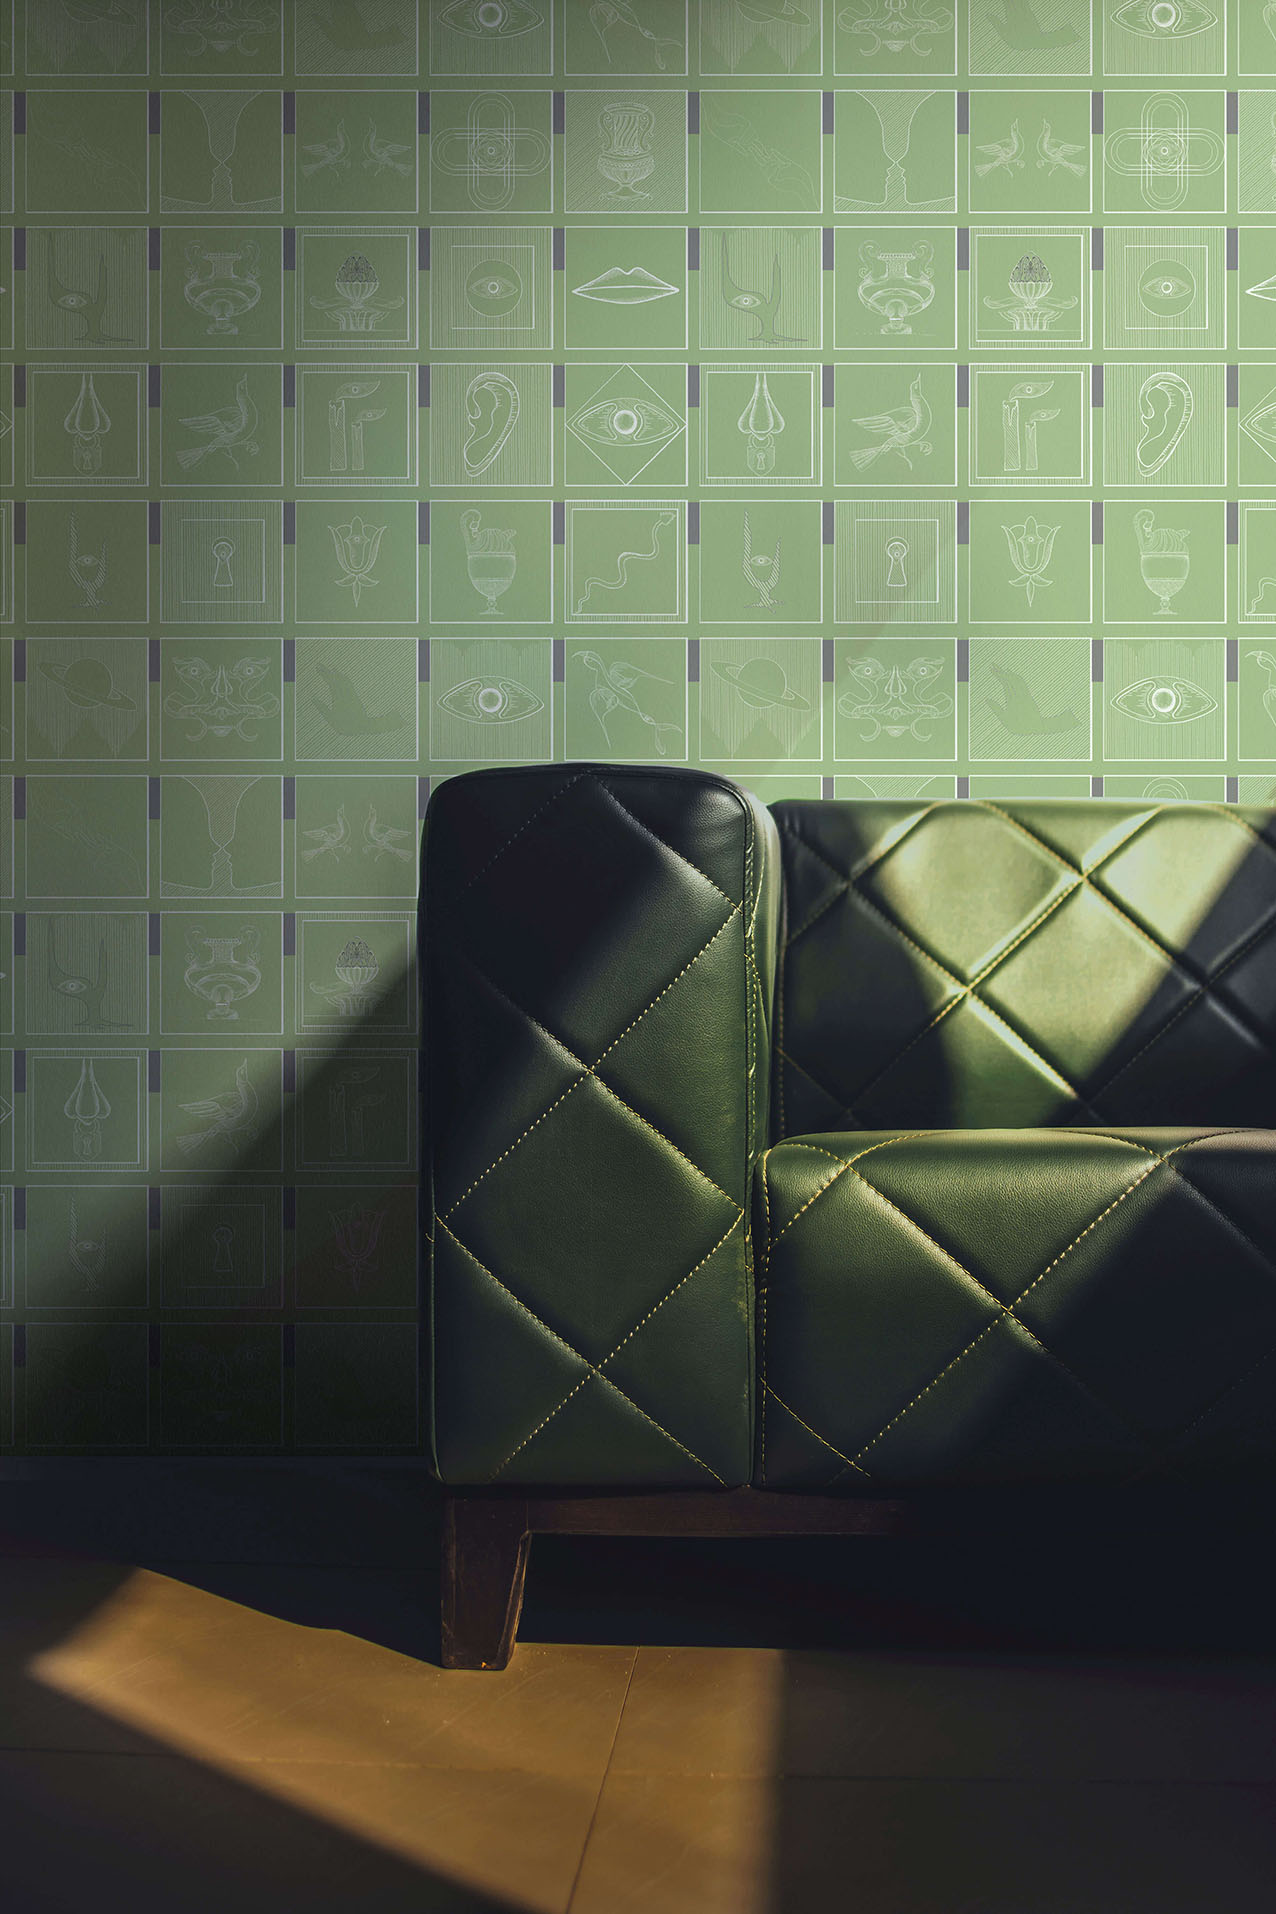 Wallpaper-Alchemici-Verde-morbido-MaVoix-wallpaper-back-sofa-wall-design-Collection-Essenziali